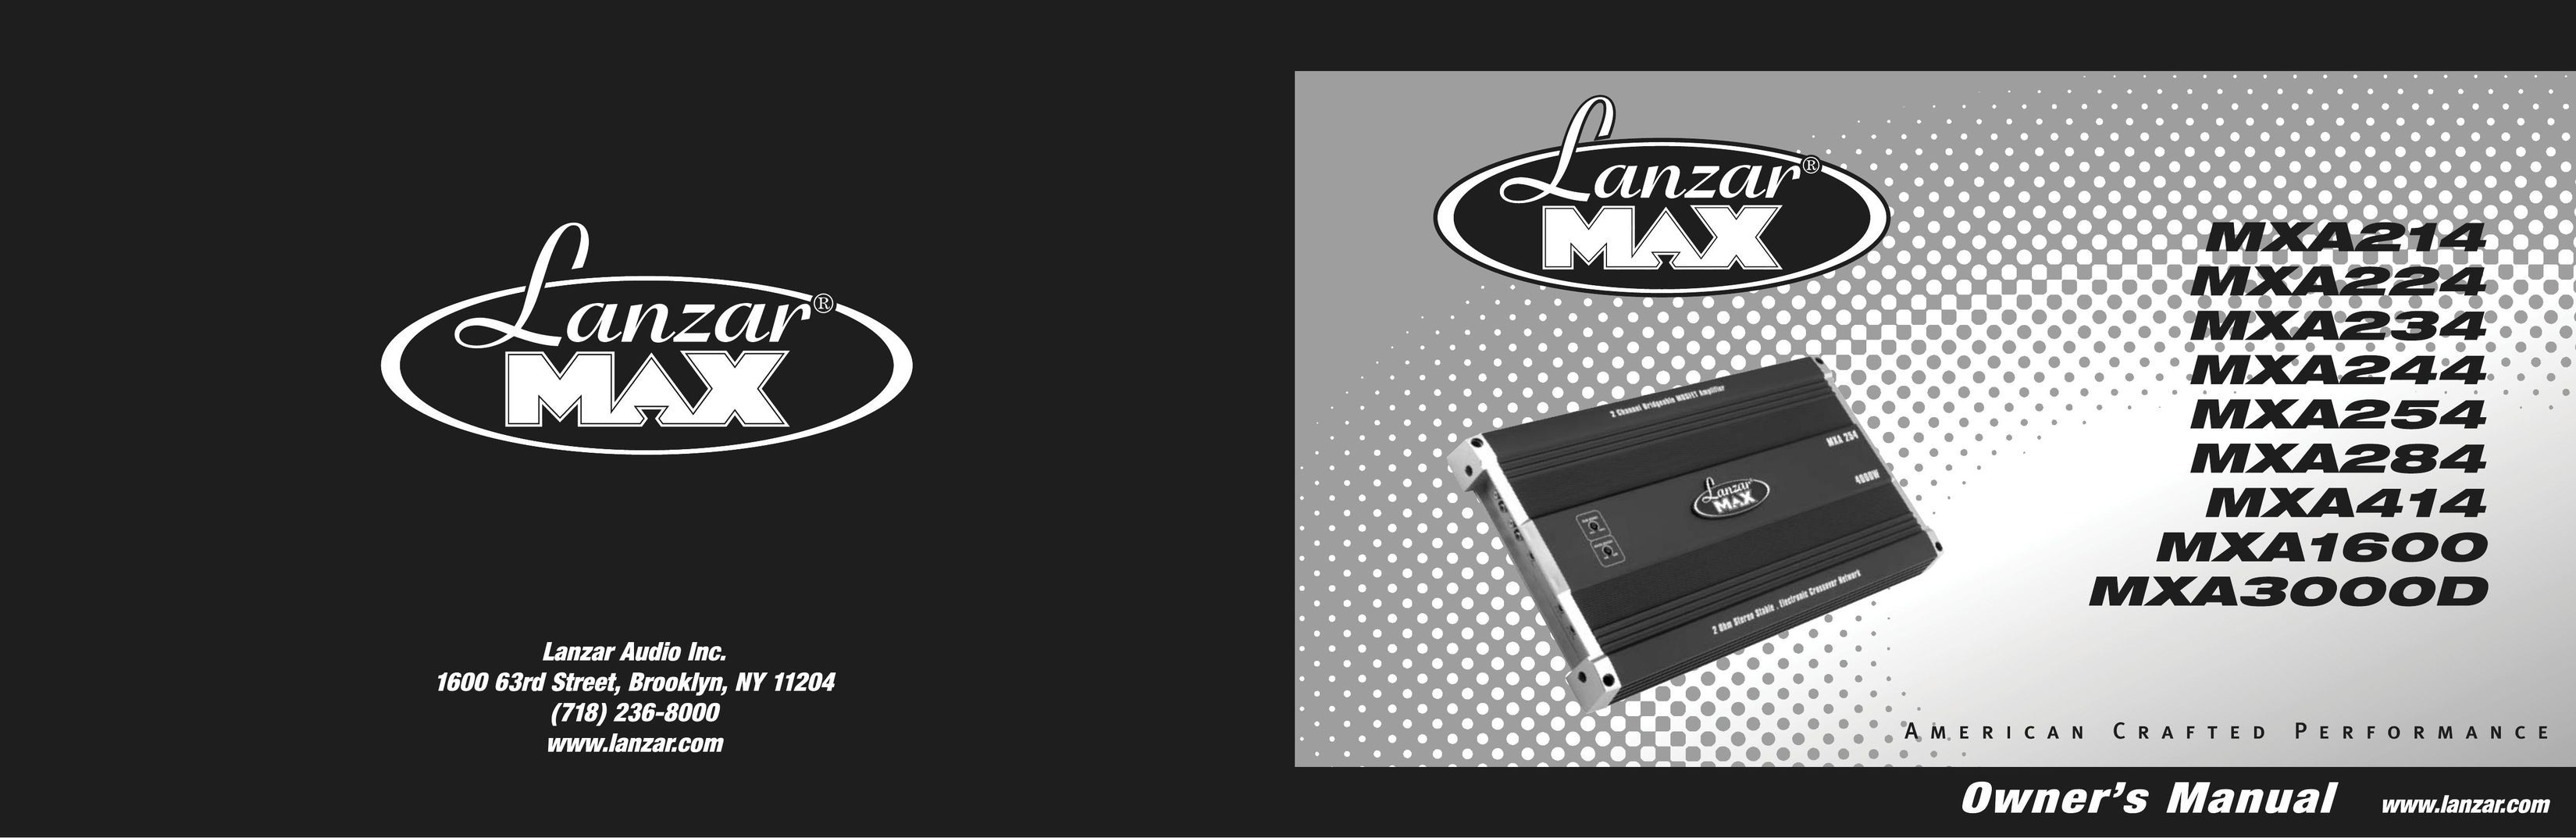 Lanzar Car Audio MXA284 Car Amplifier User Manual